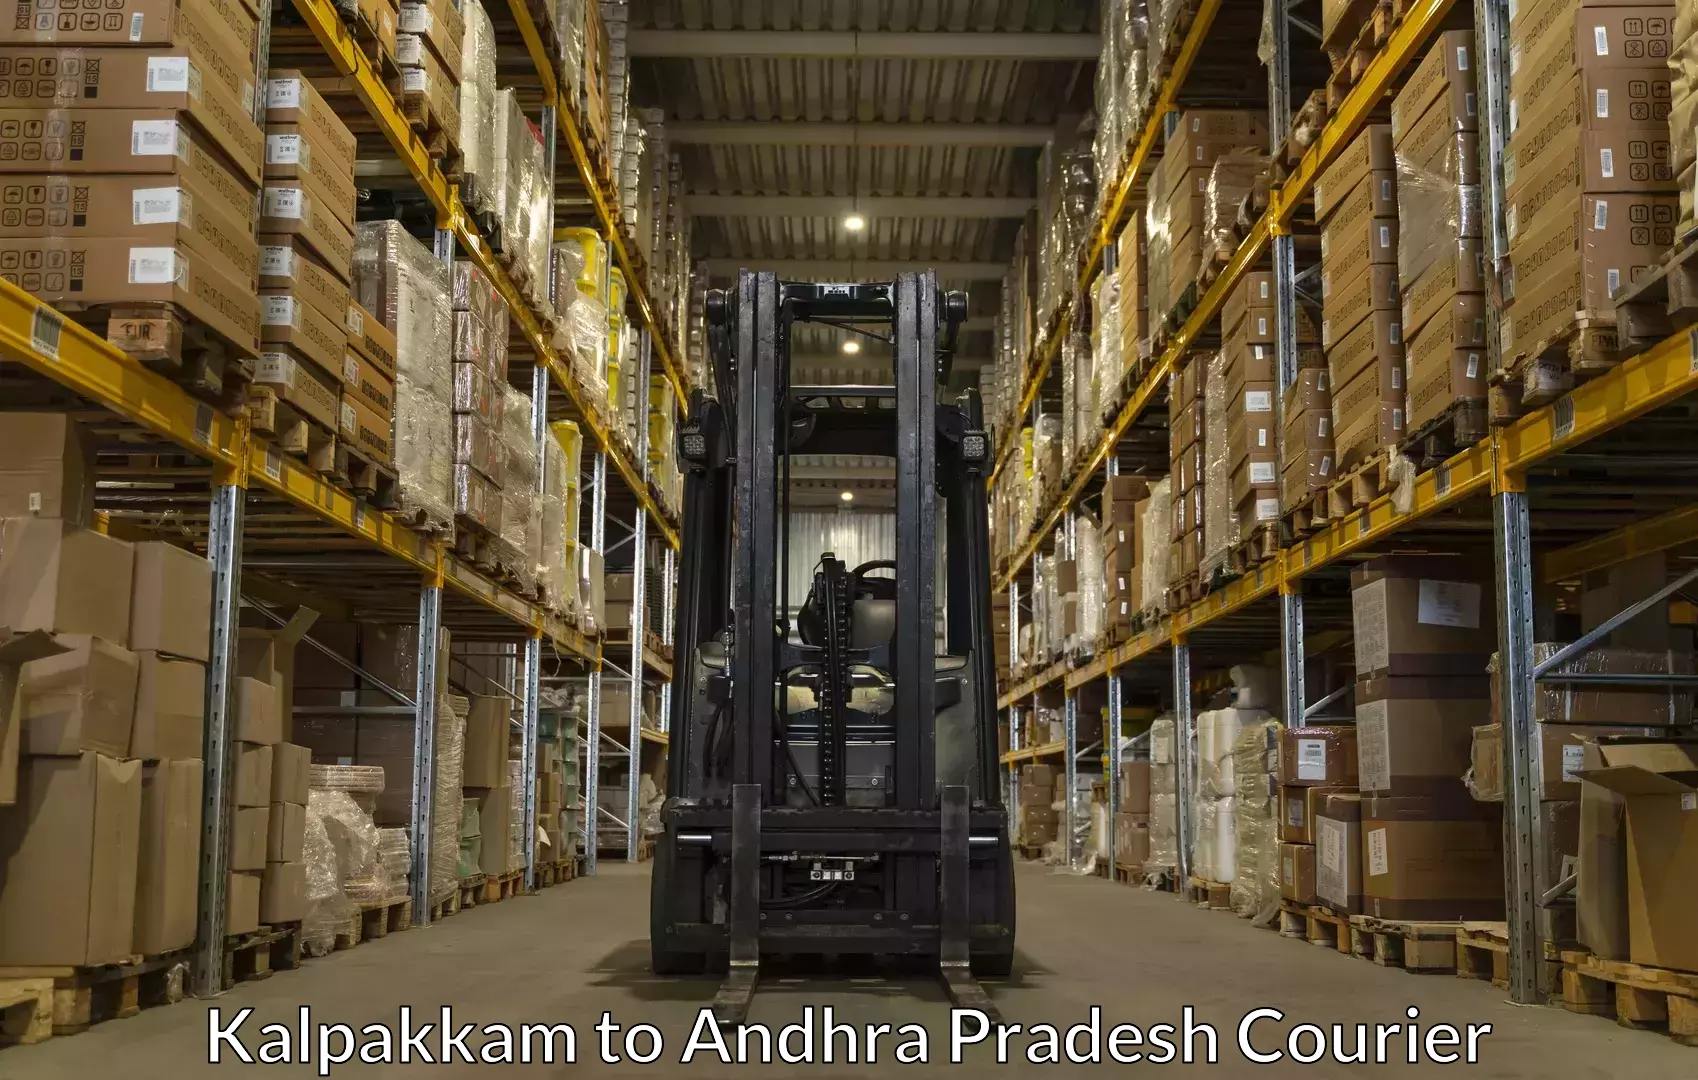 Luggage shipping solutions Kalpakkam to Rajahmundry